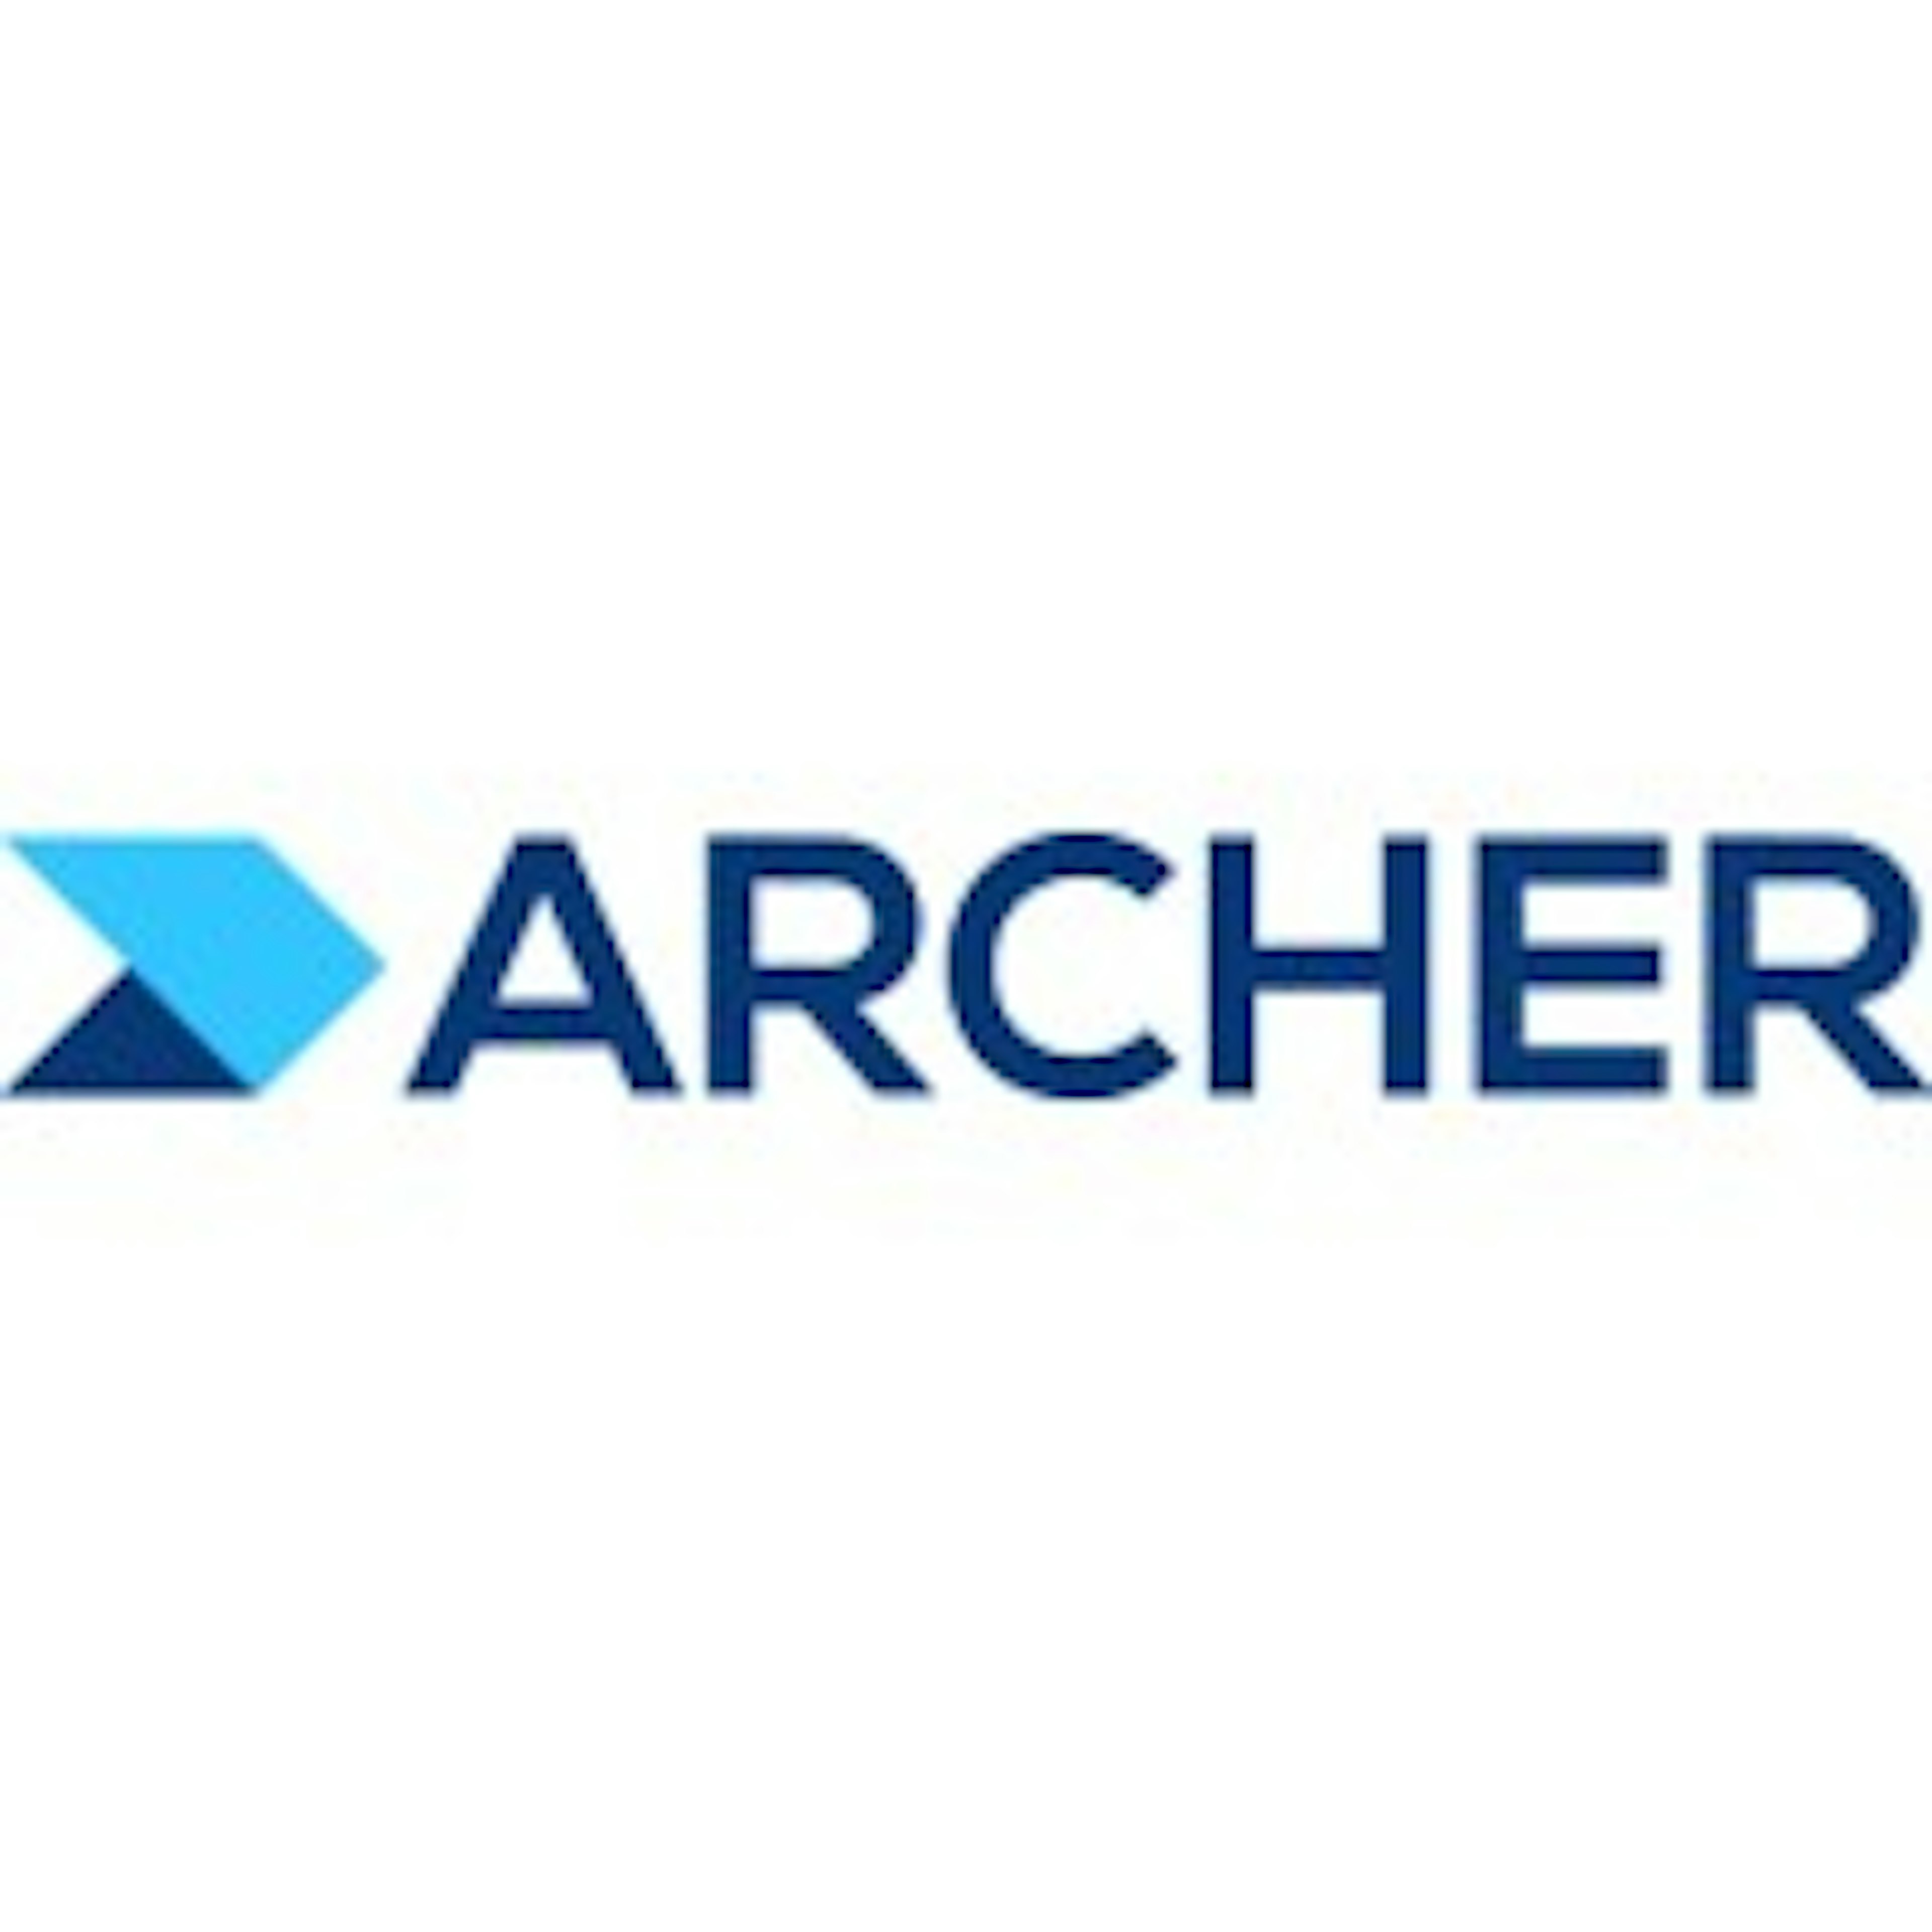 RSA Archer Suite Logo